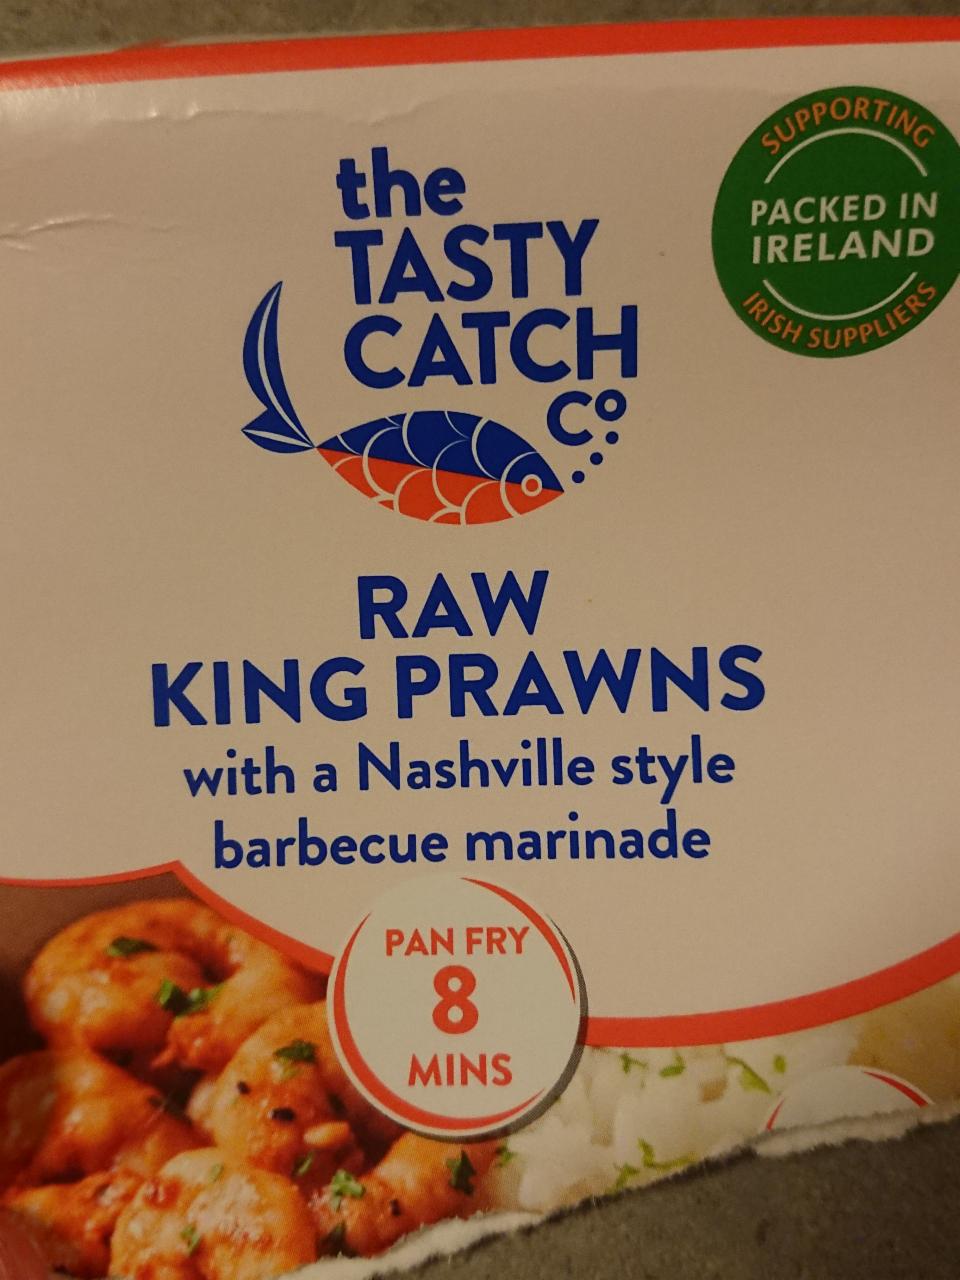 Fotografie - The tasty catch raw King prawns 